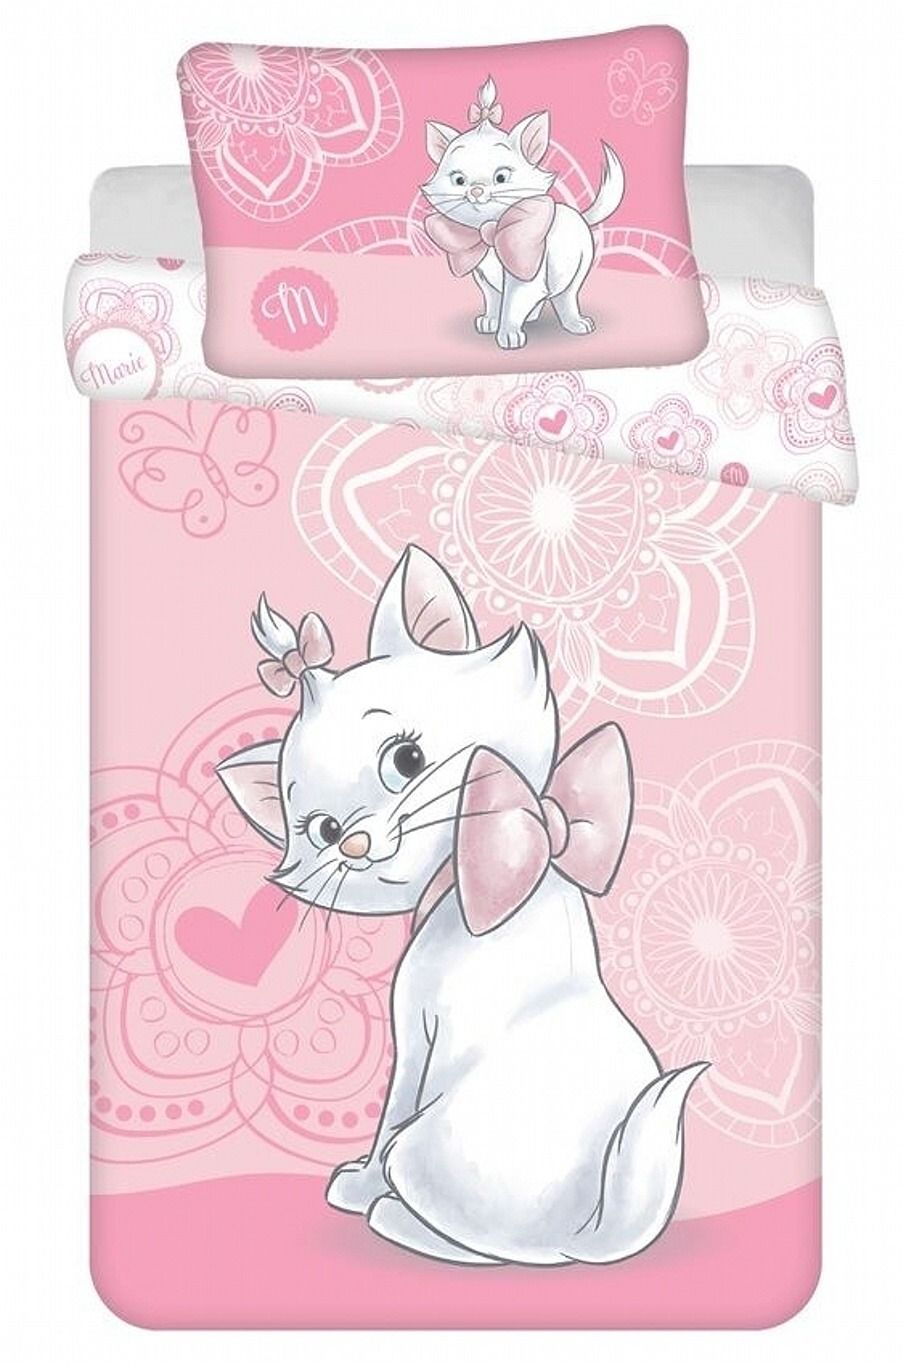 Jerry Fabrics Disney povlečení do postýlky Marie cat 02 baby 100x135, 40x60 cm